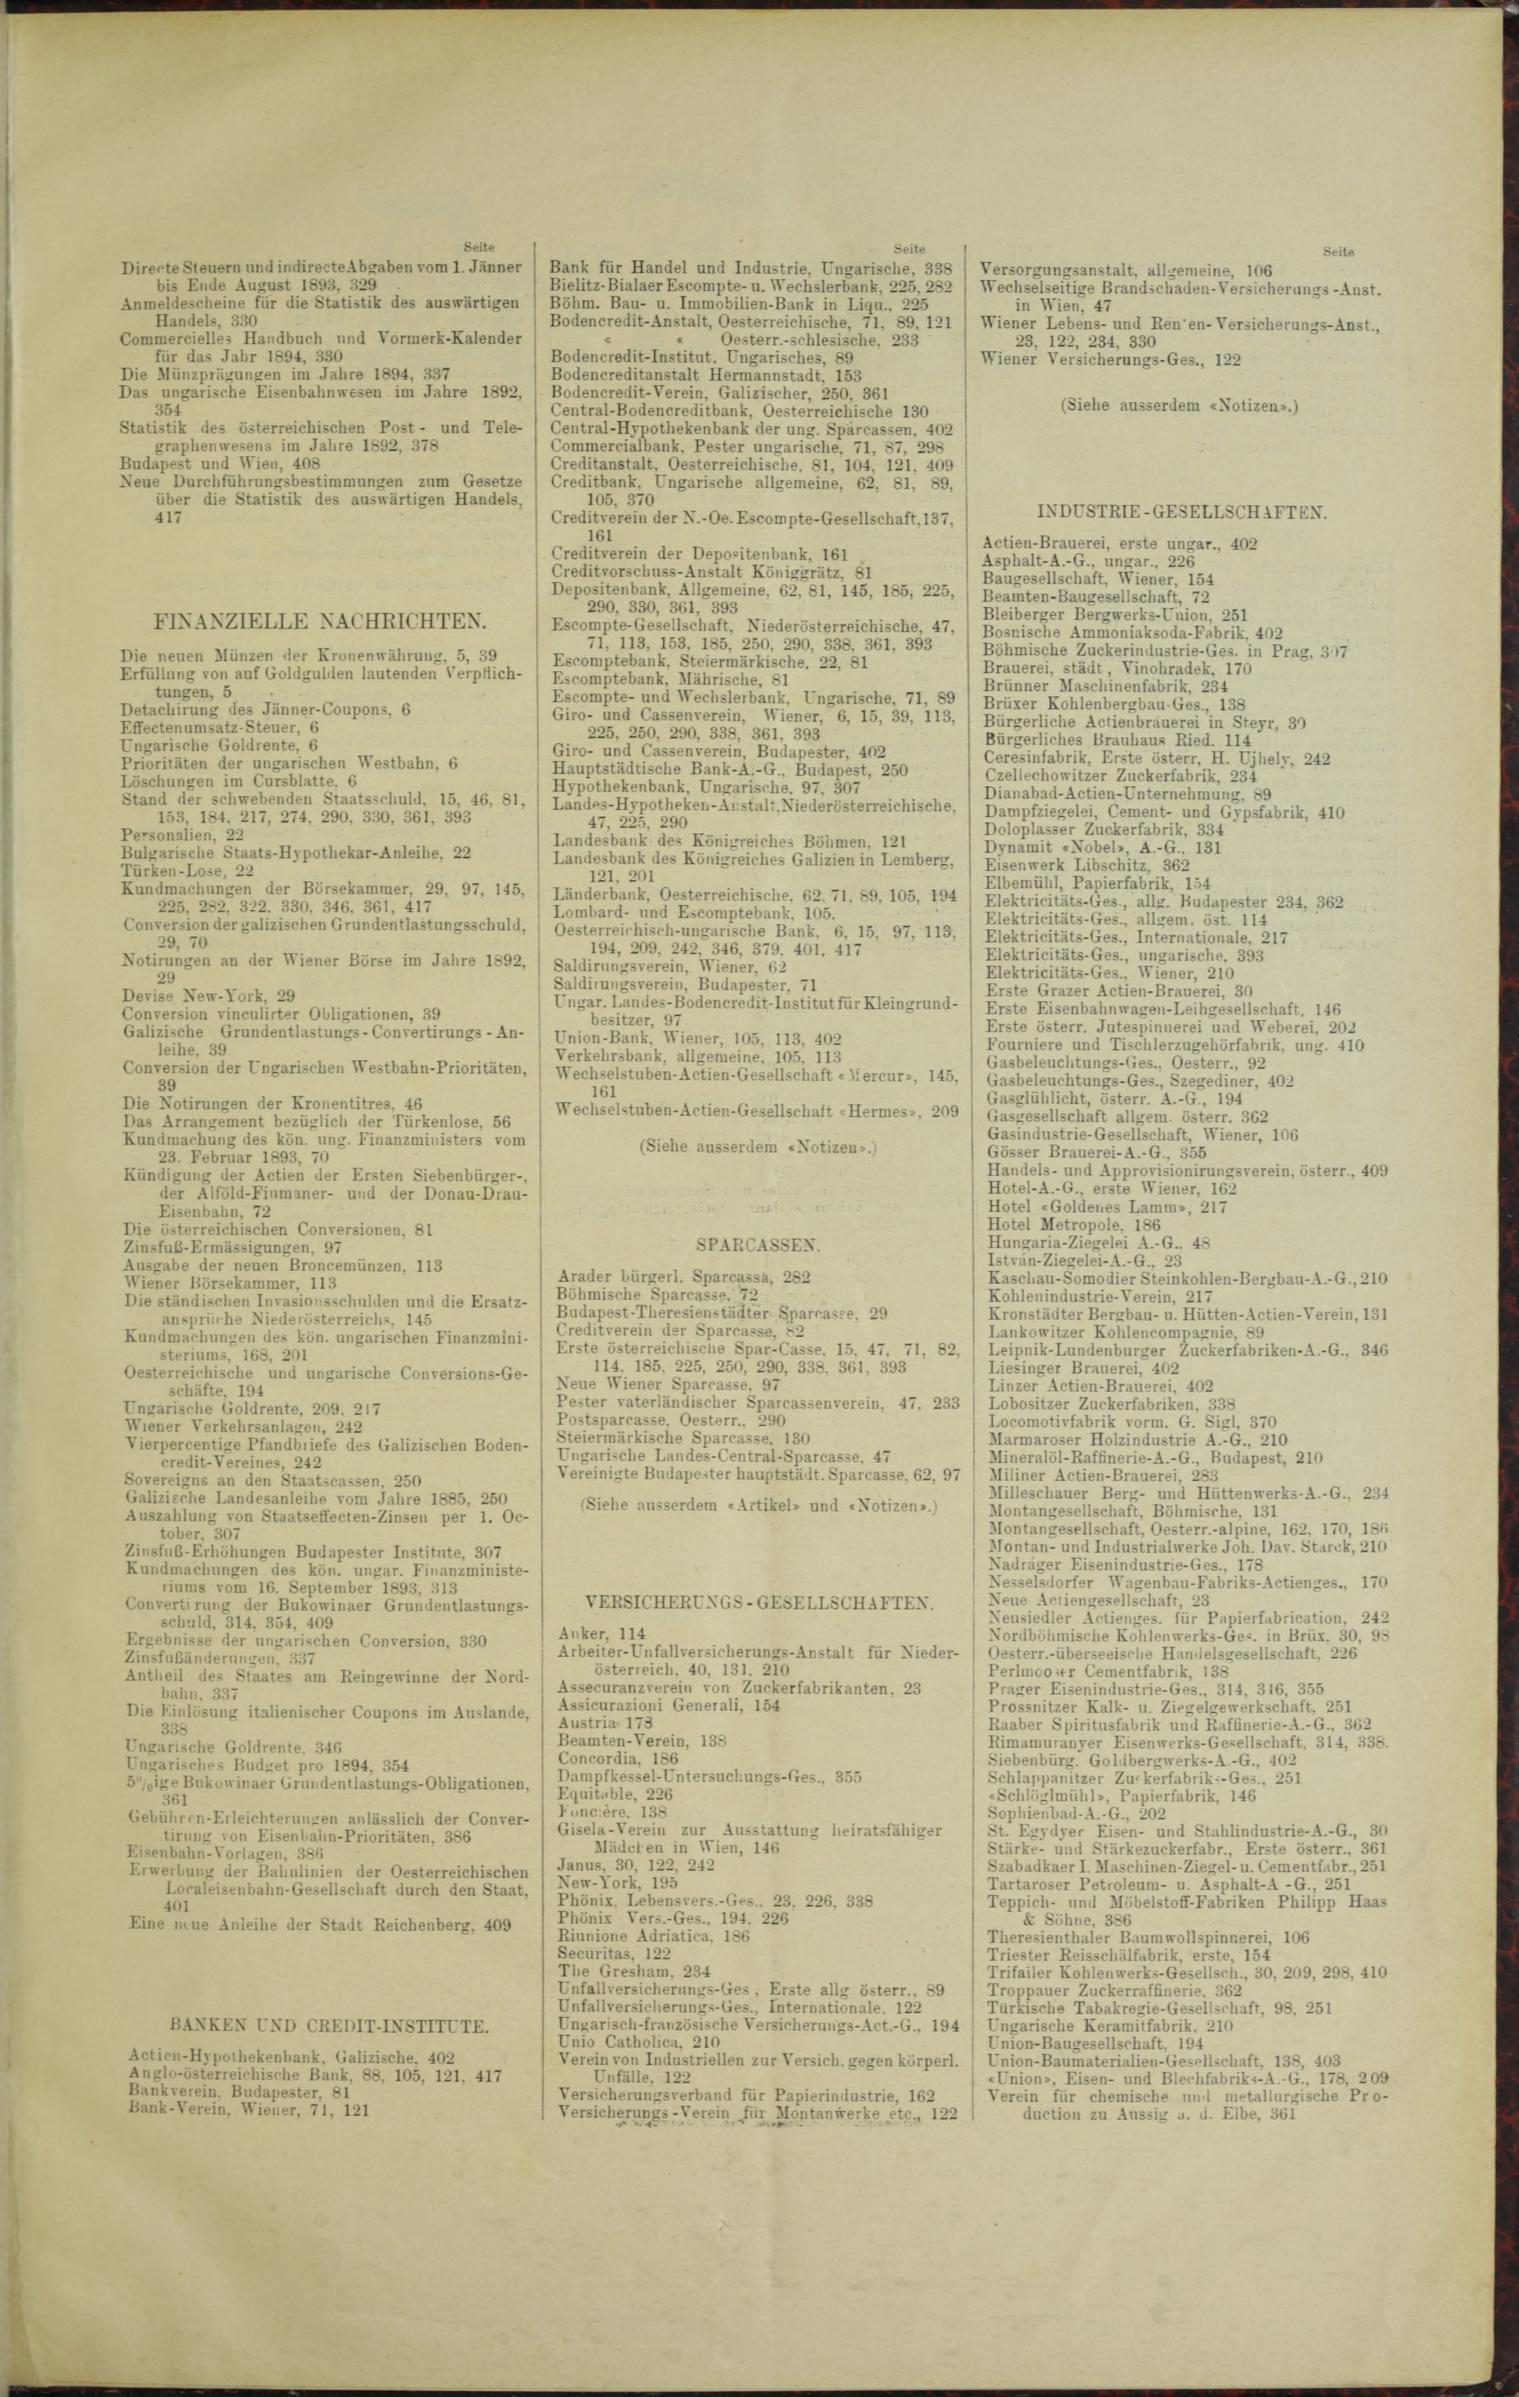 Der Tresor 23.02.1893 - Seite 11